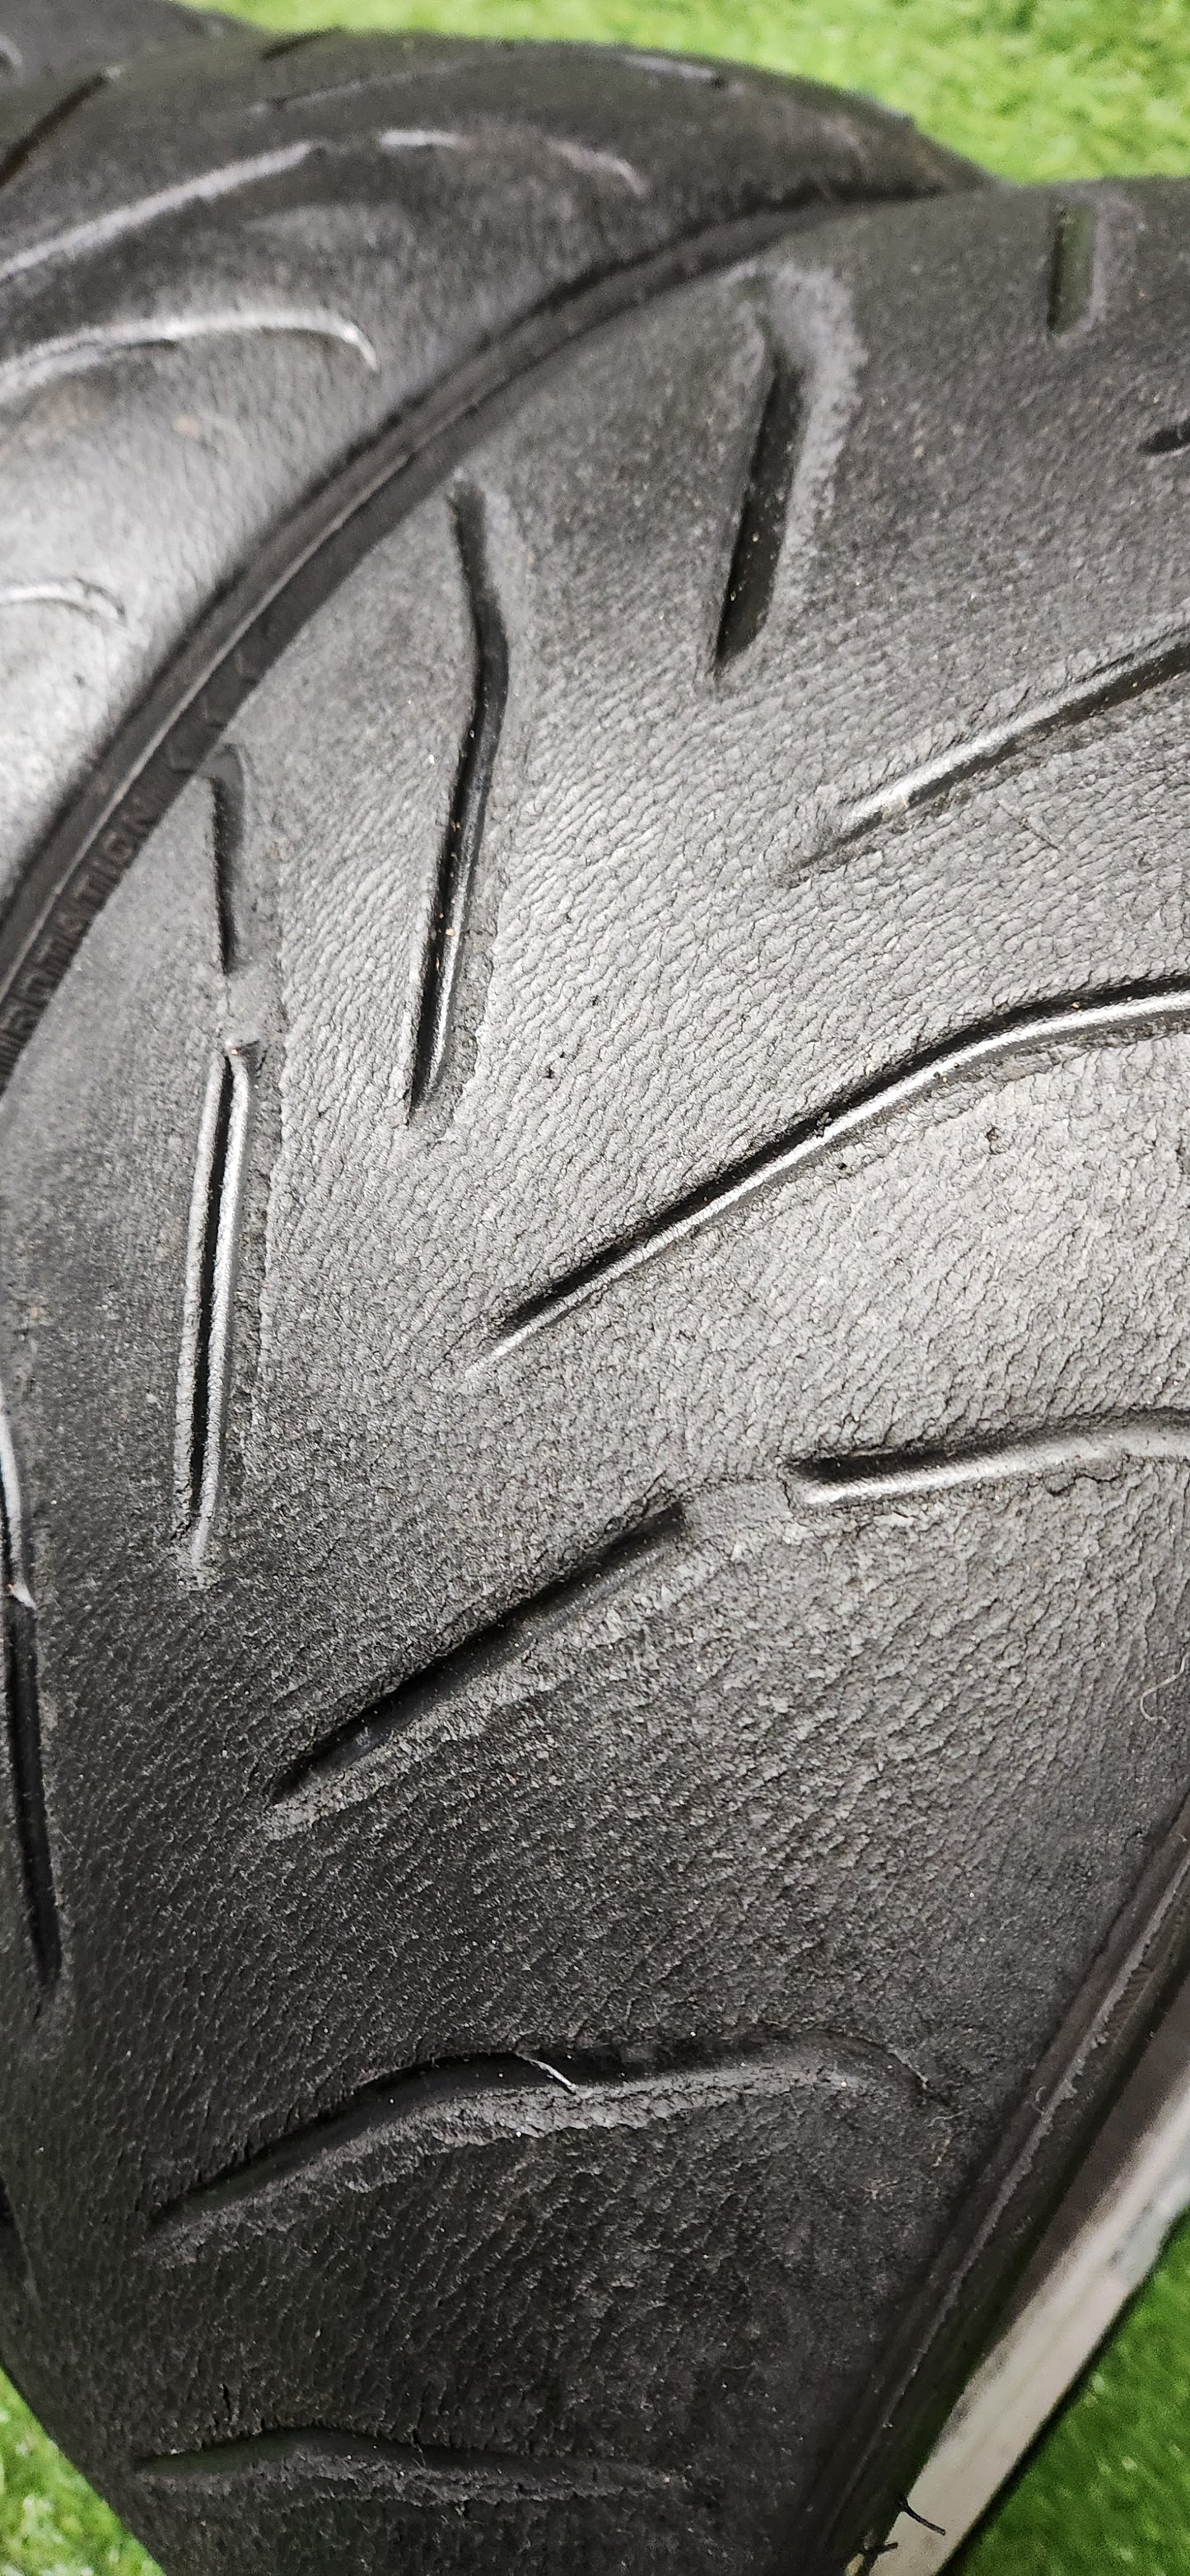 Avon ZZR 215/45/17 Semi Slick Trackday Tyres. (4 Tyres)